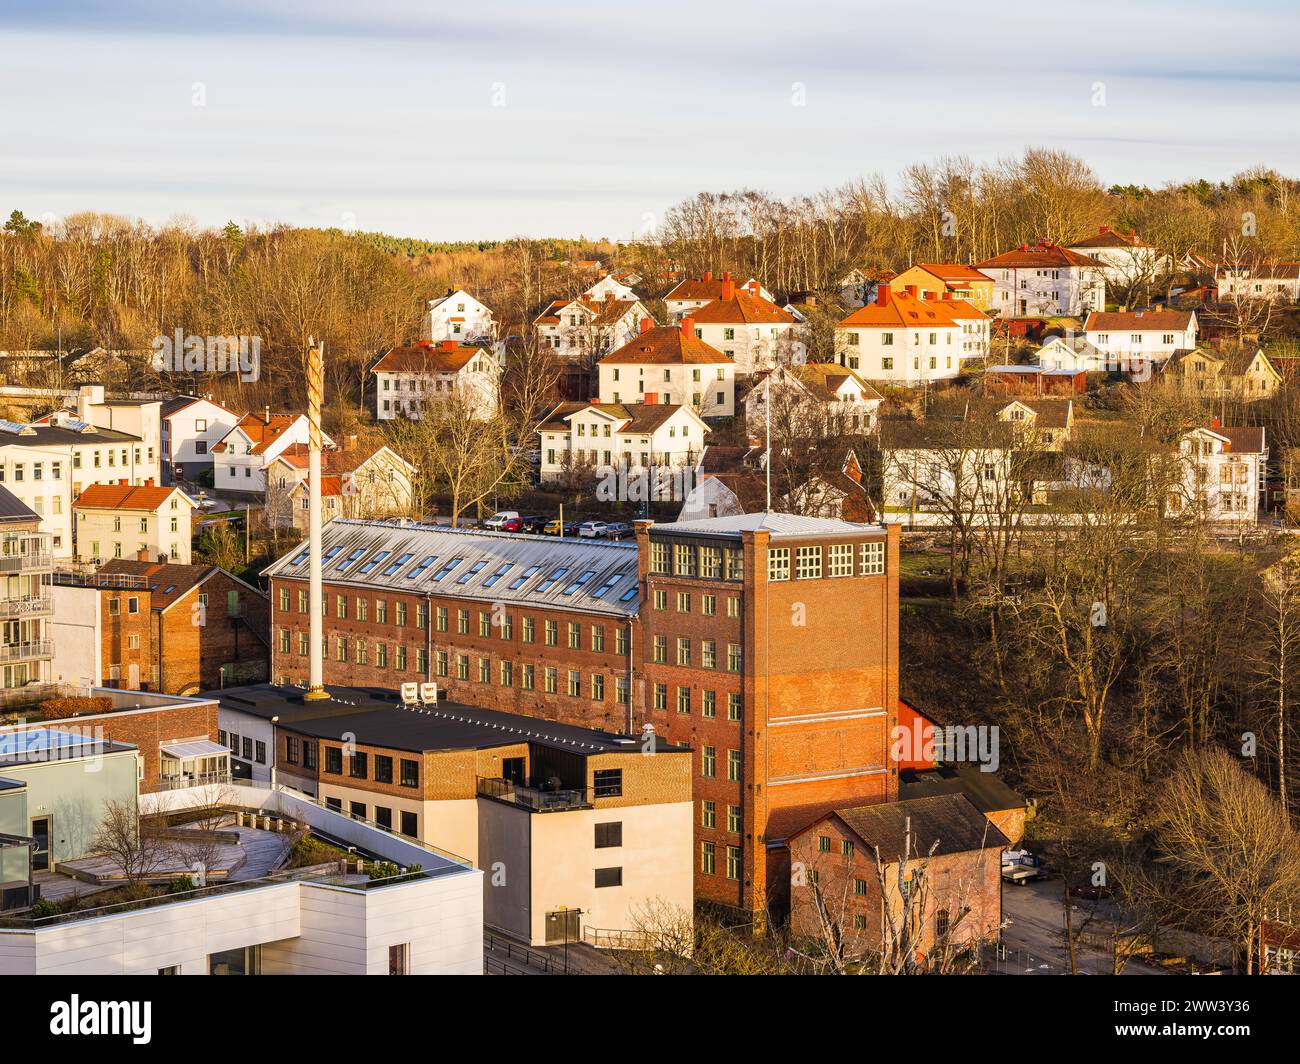 La lueur chaude du soleil couchant baigne le mélange de maisons résidentielles et d'installations industrielles à Mölndal, en Suède. La scène pittoresque met en valeur con Banque D'Images